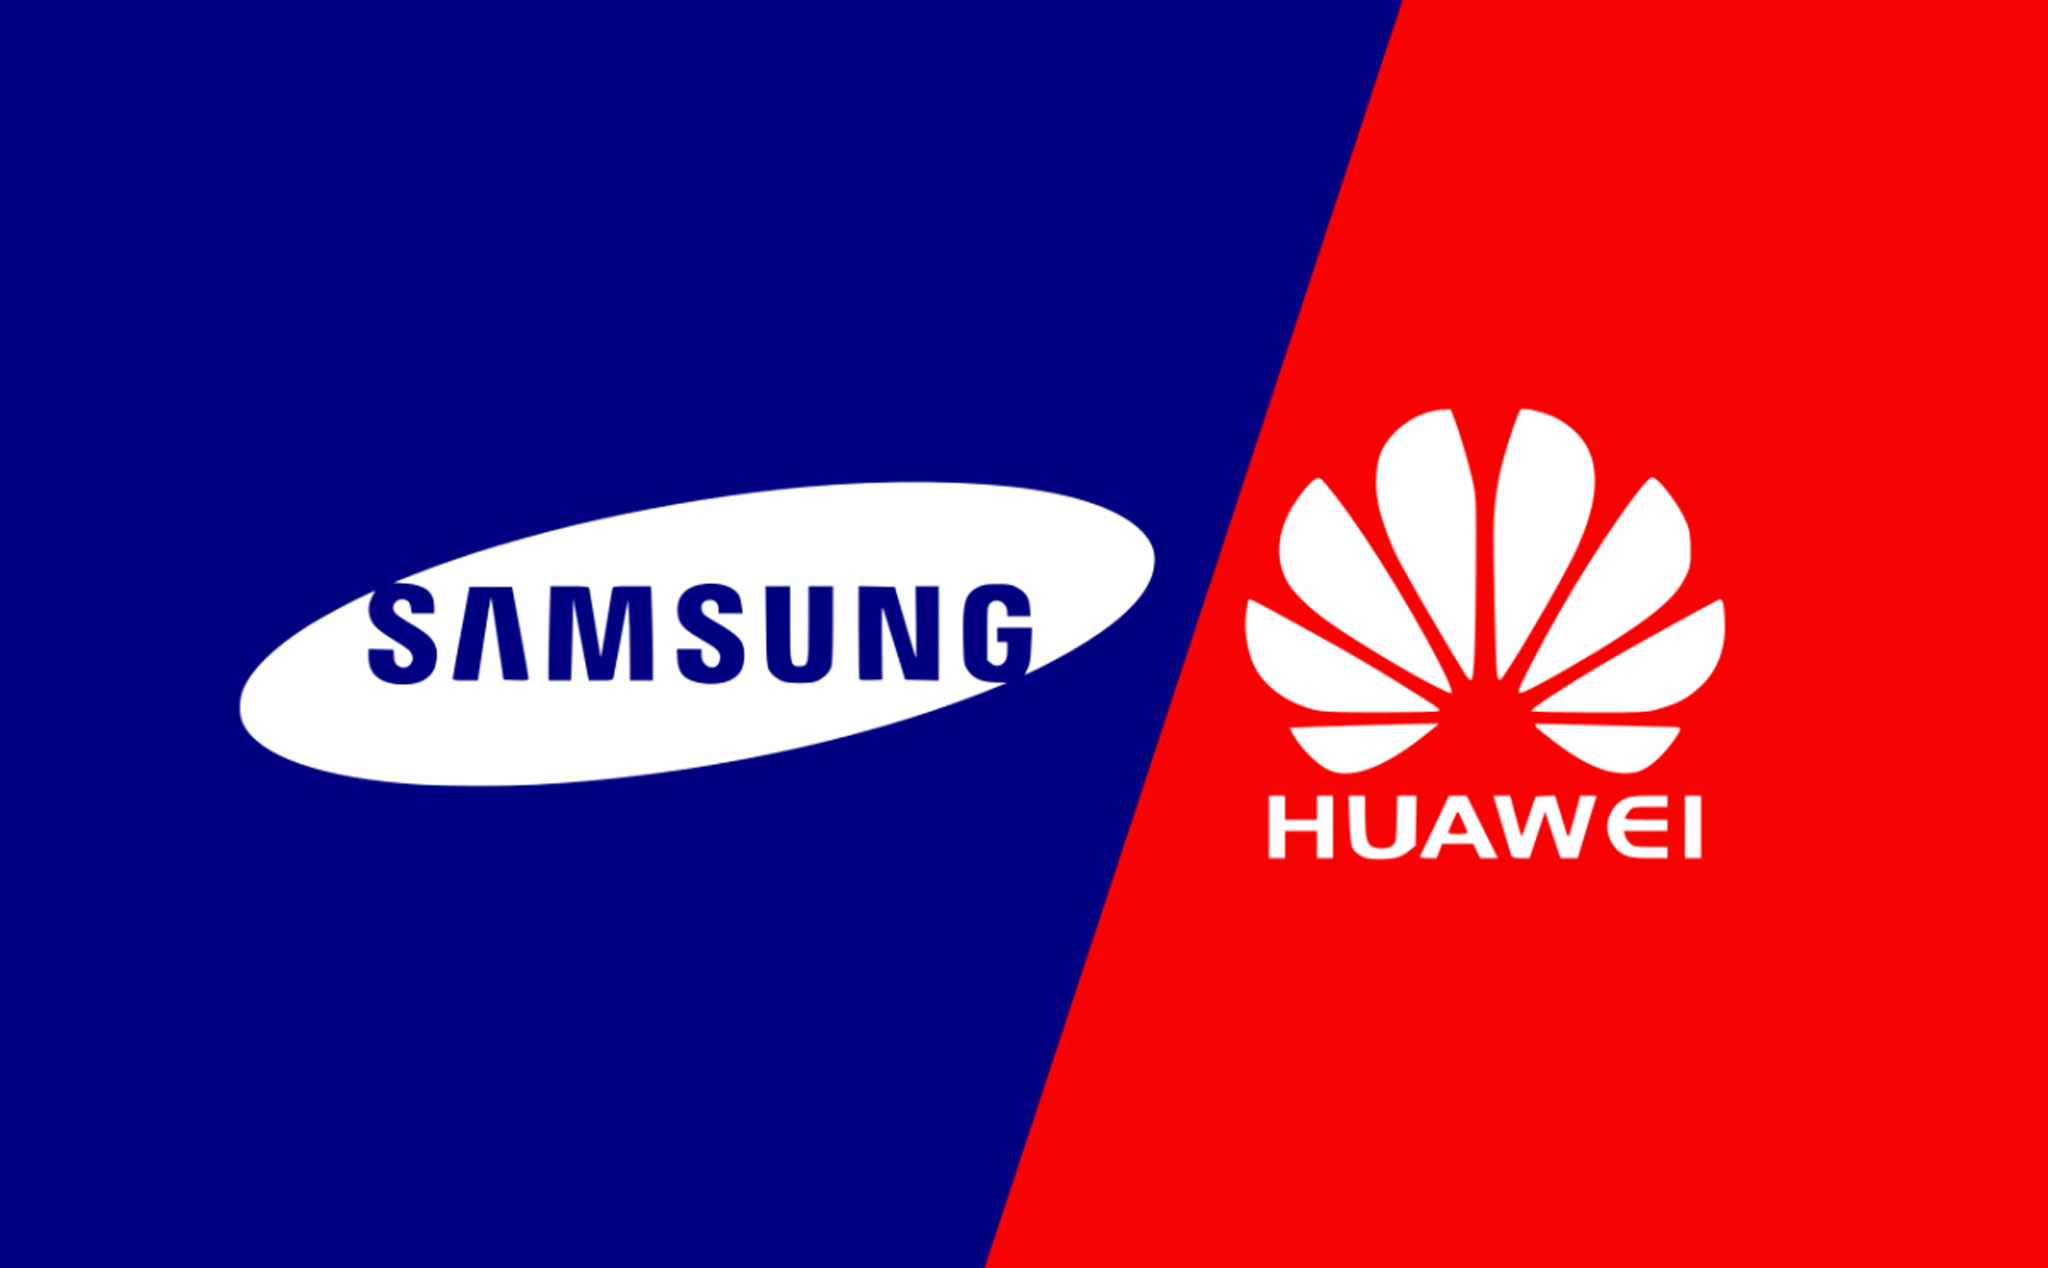 Tháng 8/2020: Samsung trở lại đứng đầu thị trường di động, Xiaomi lấy dần thị phần của Huawei